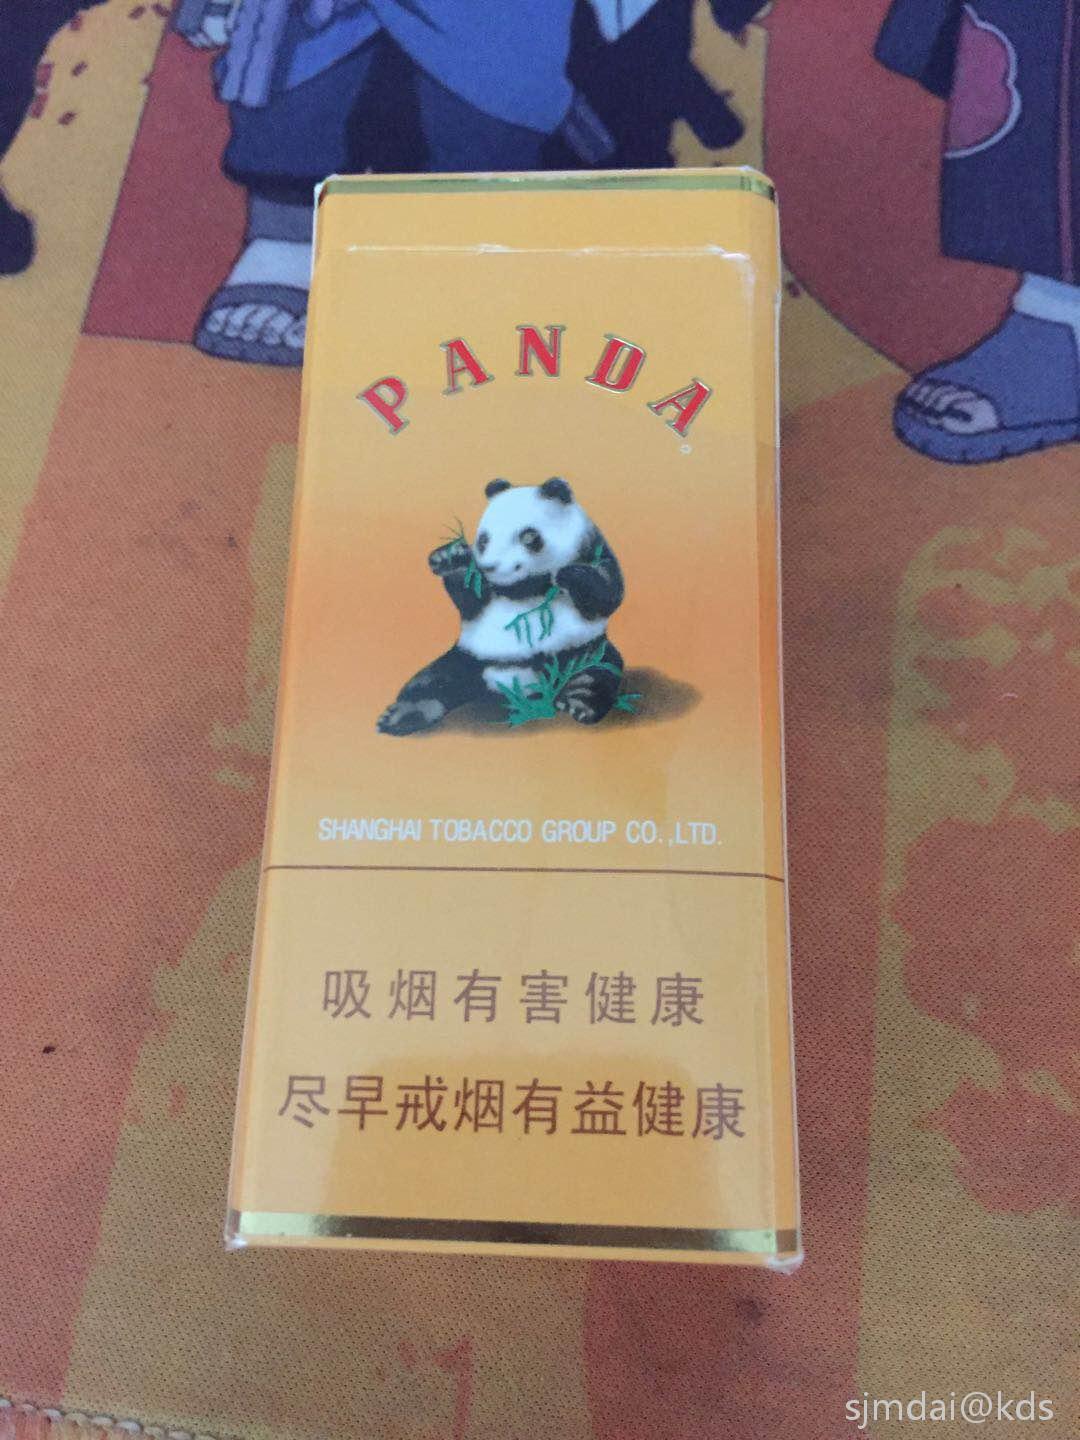 中支黄熊猫香烟图片